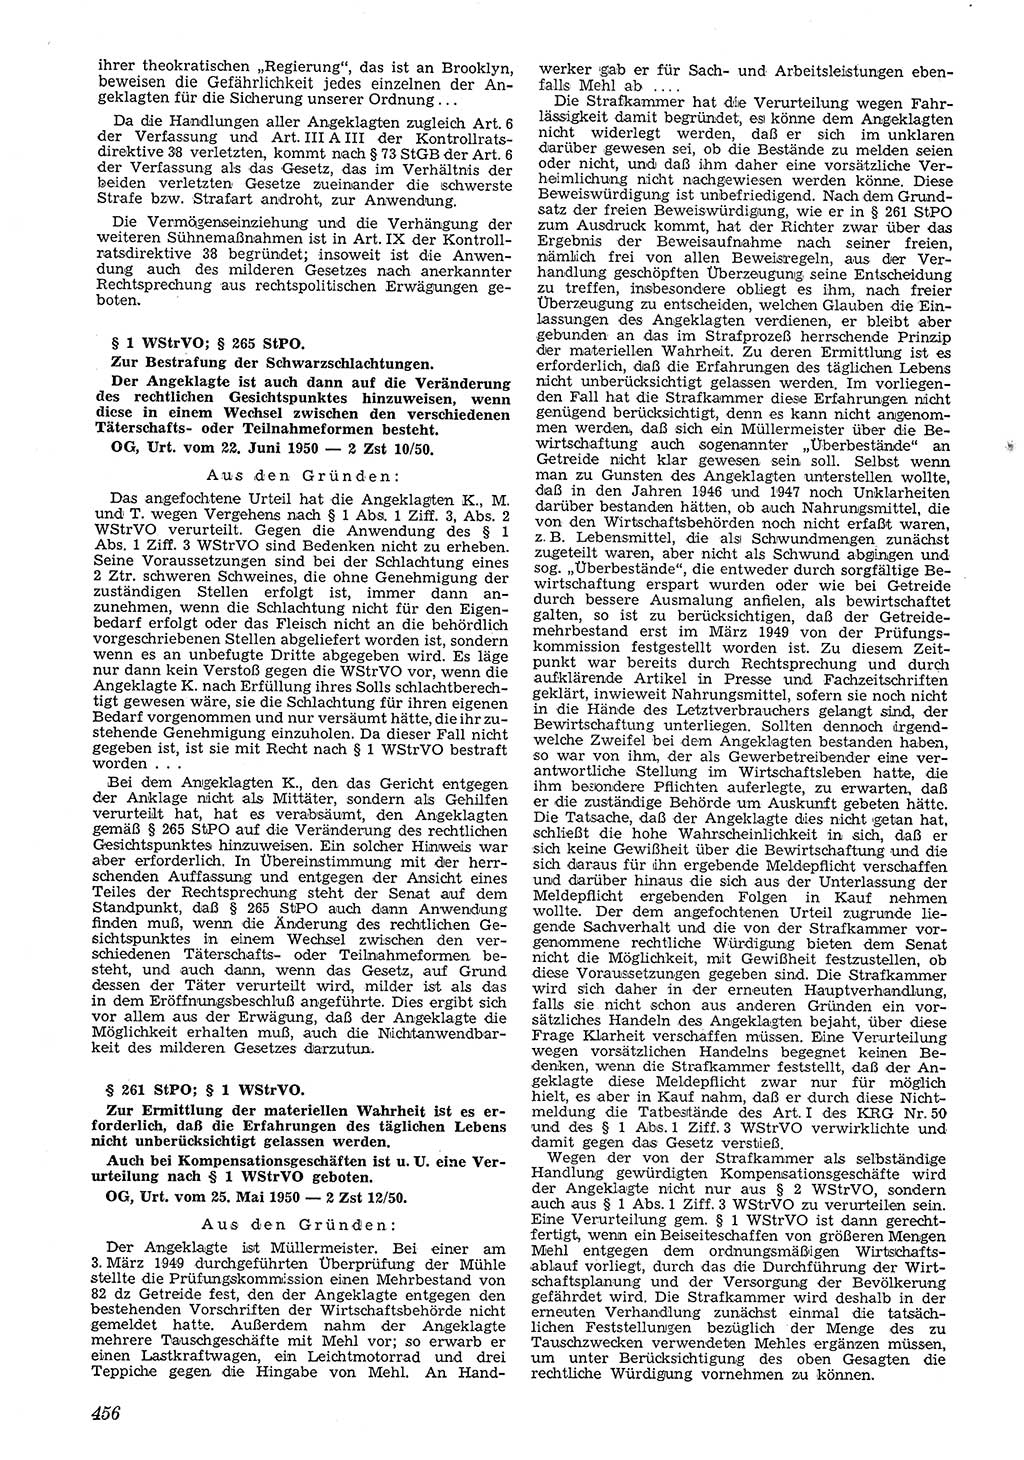 Neue Justiz (NJ), Zeitschrift für Recht und Rechtswissenschaft [Deutsche Demokratische Republik (DDR)], 4. Jahrgang 1950, Seite 456 (NJ DDR 1950, S. 456)